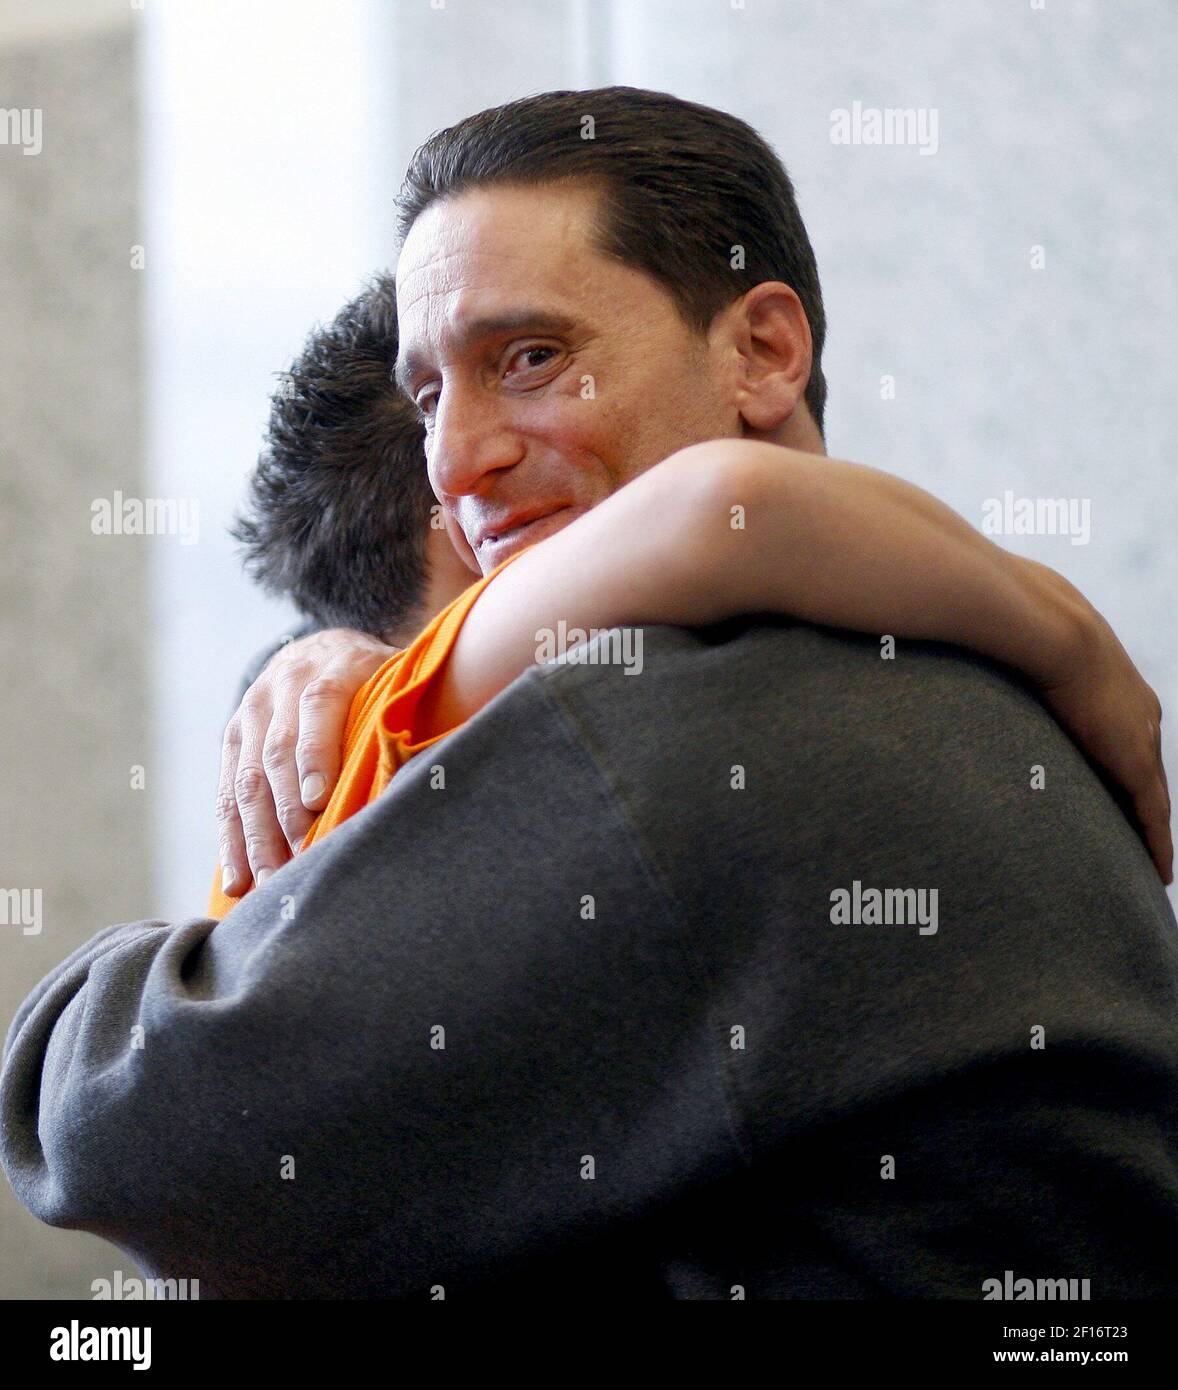 Scott Fappiano, a destra, è abbracciato da un parente in un palazzo di tribunale a Brooklyn, New York, il 6 ottobre 2006, dopo il suo rilascio dalla prigione basato su prove del DNA che lo hanno esonerato. (Foto di Robert Mecea/Newsday/MCT/Sipa USA) Foto Stock